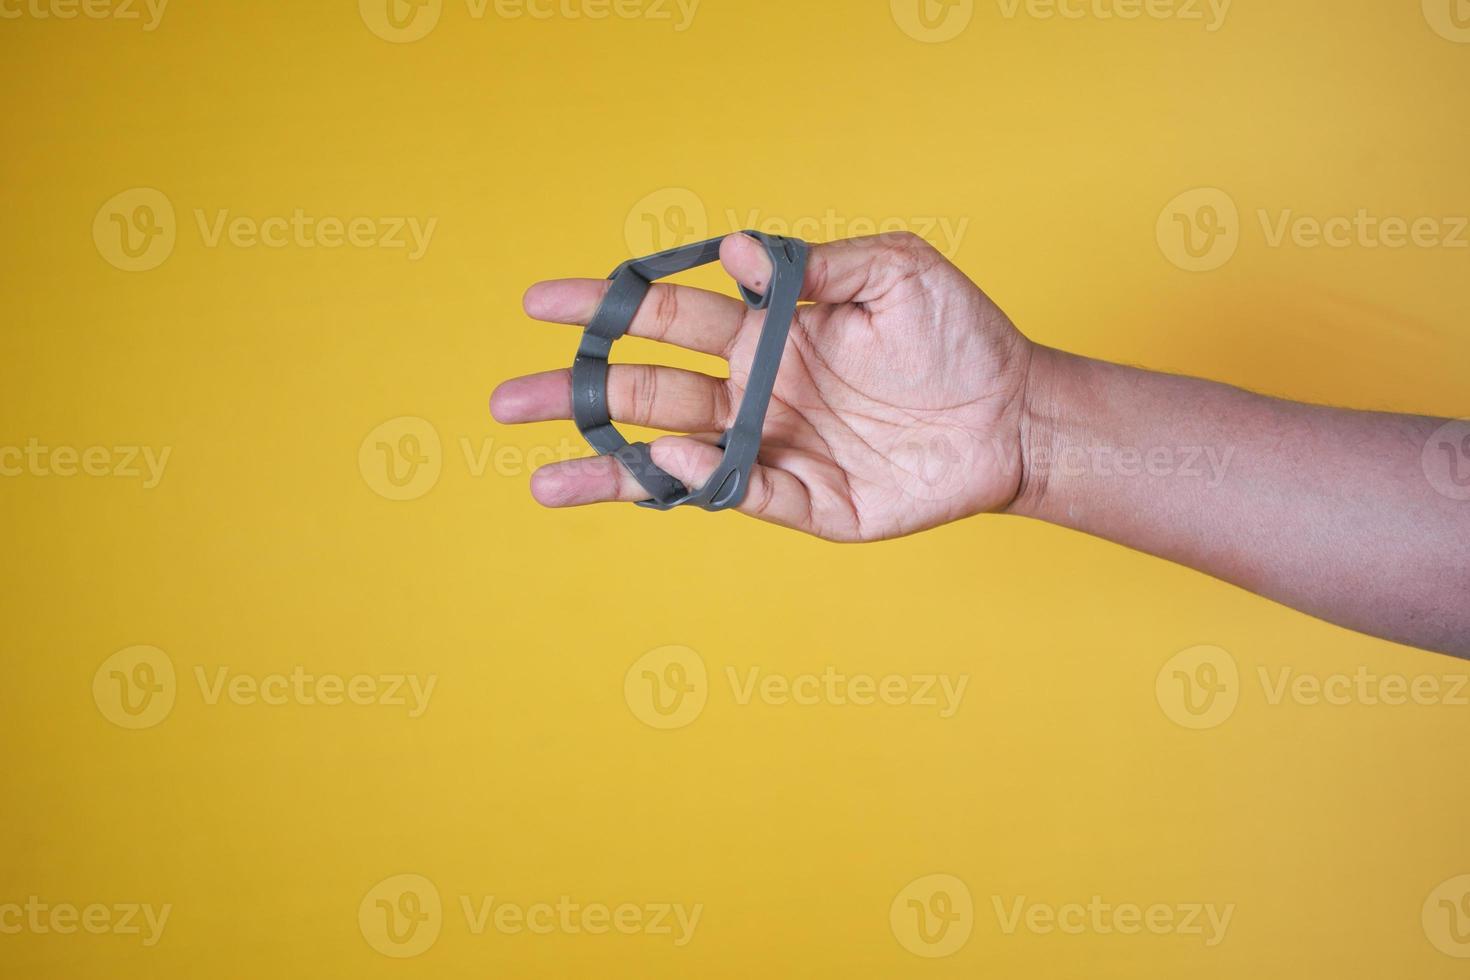 esercizio di mobilità della mano il dito e la mano sono sul tavolo foto